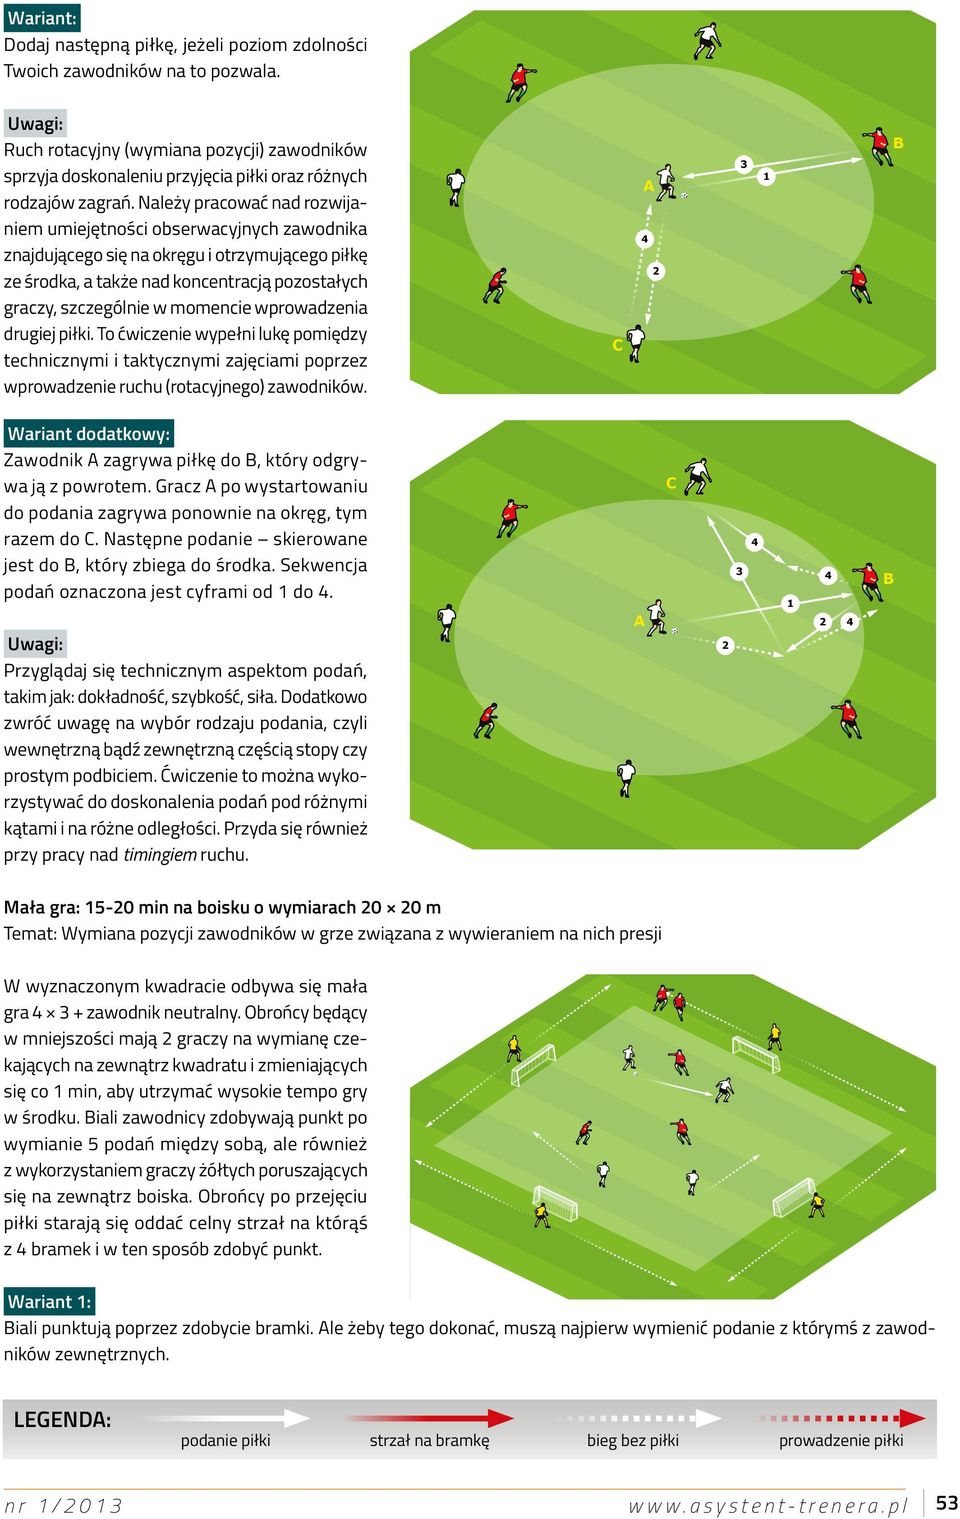 wprowadzenia drugiej piłki. To ćwiczenie wypełni lukę pomiędzy technicznymi i taktycznymi zajęciami poprzez wprowadzenie ruchu (rotacyjnego) zawodników.